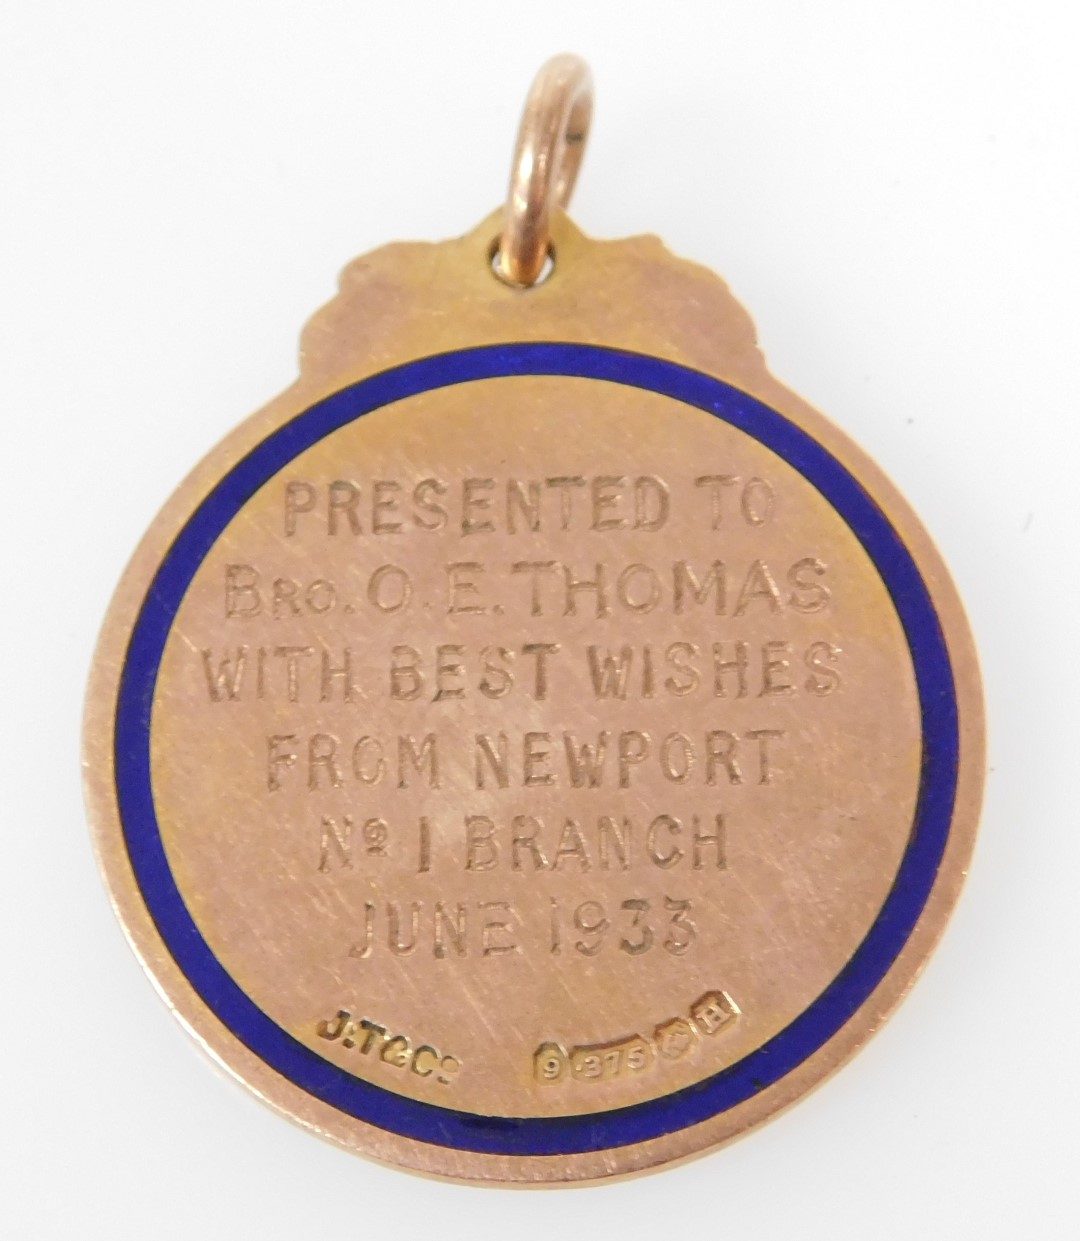 A 9ct gold enamel National Union of Railway men medallion, presentation engraved to Bro. E. Thomas, - Image 2 of 2